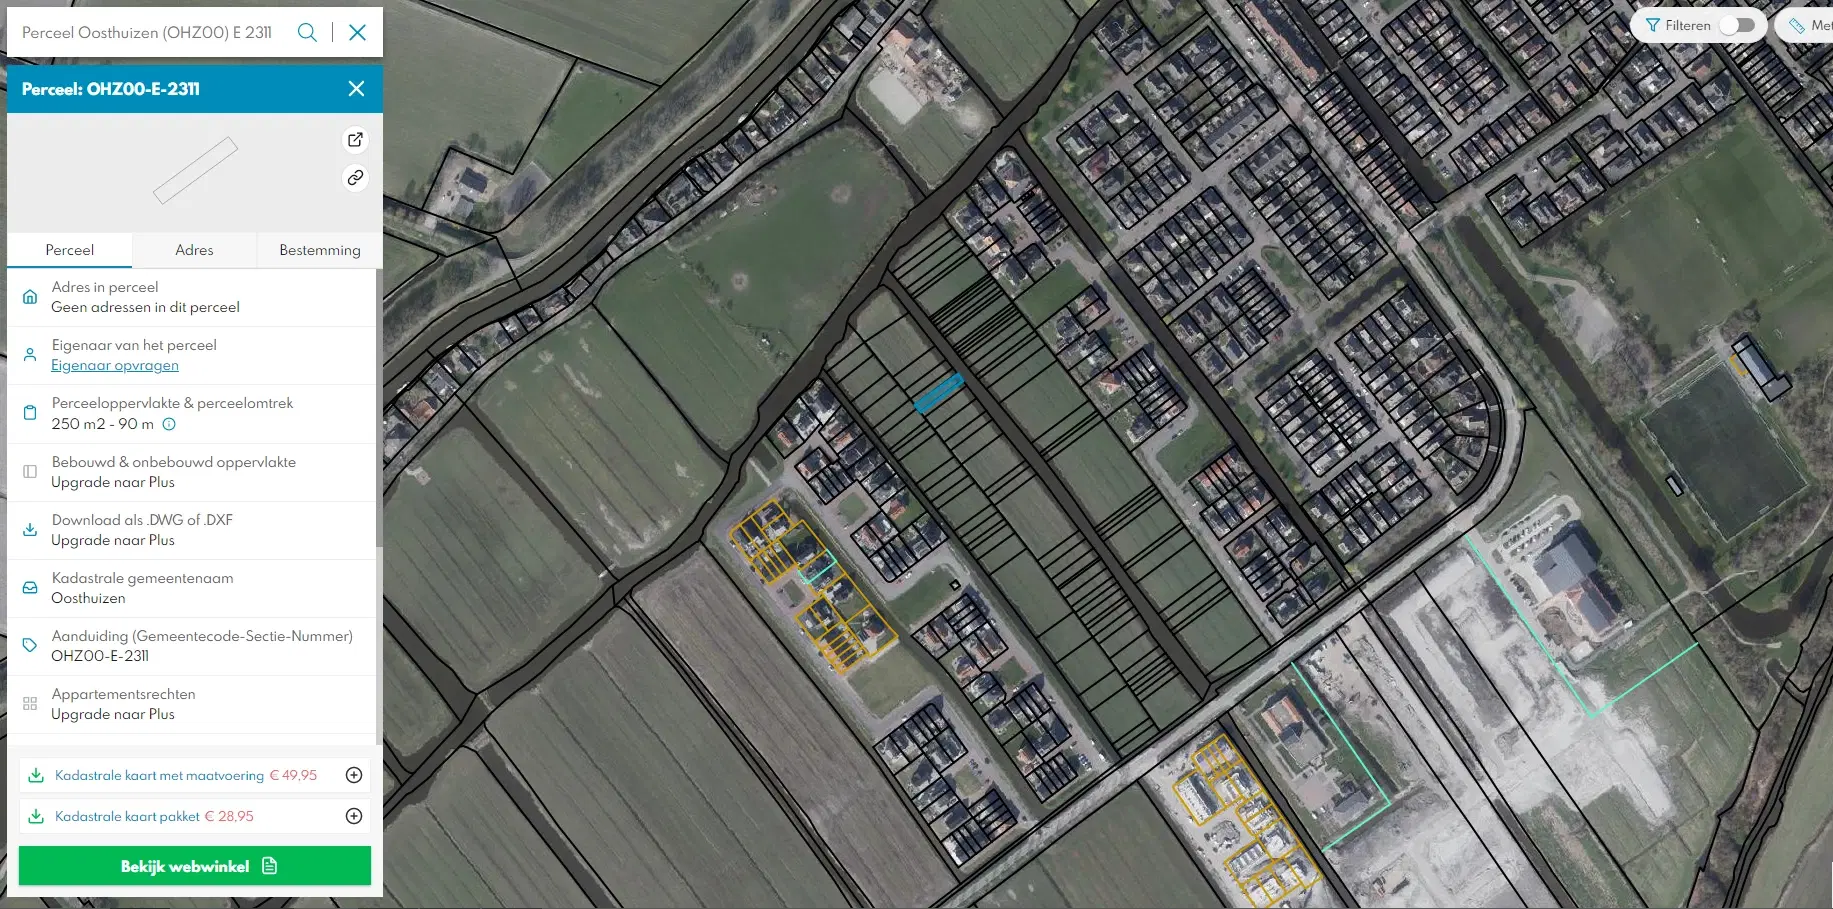 Perceel agrarische grond (perceelnummer 2311) gelegen te Oosthuizen